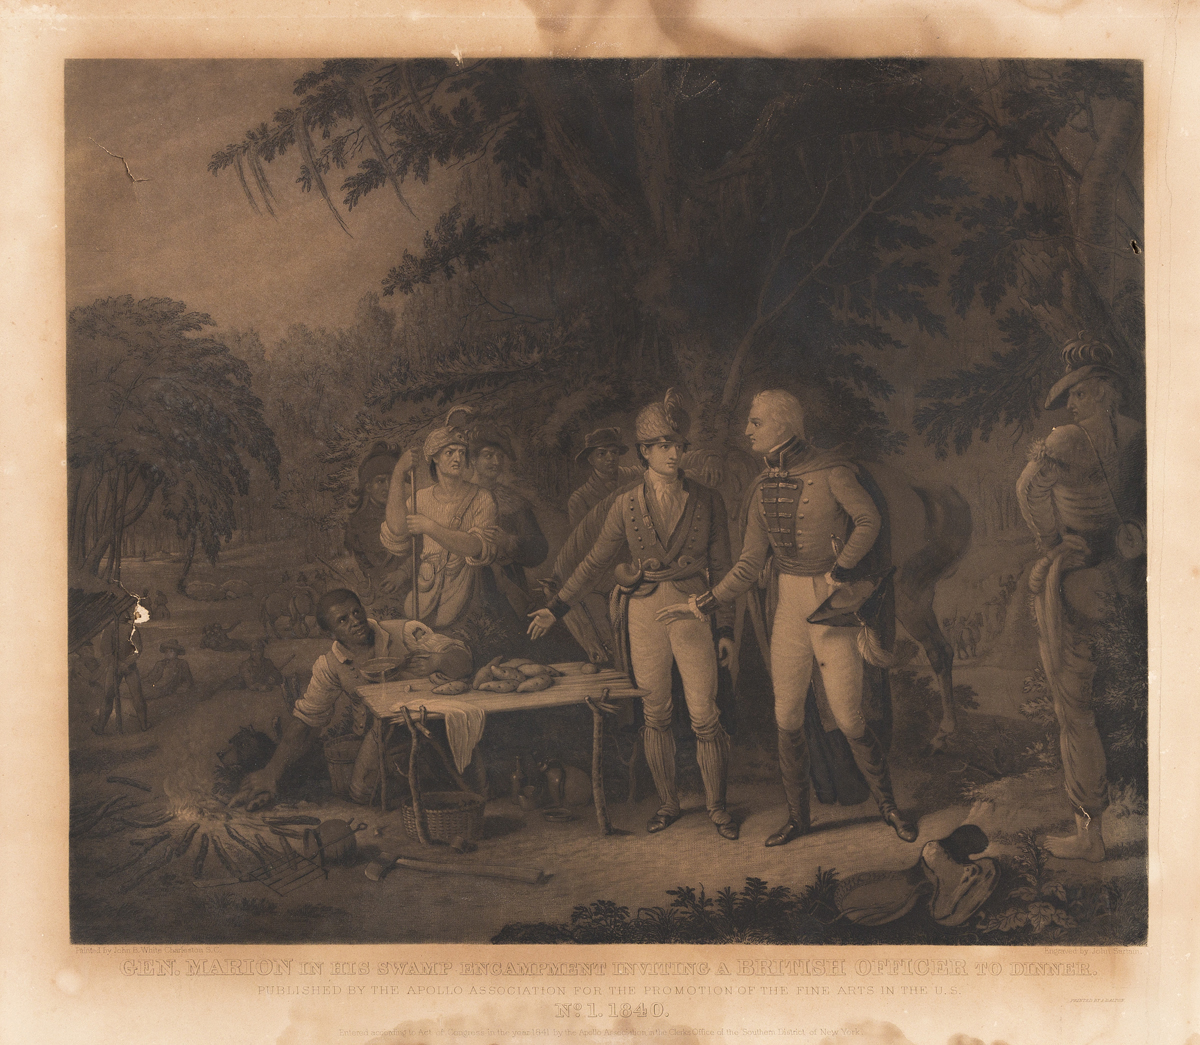 (REVOLUTION.) John Sartain, engraver; after John B. White. Gen. Marion in his Swamp Encampment Inviting a British Officer for Dinner.